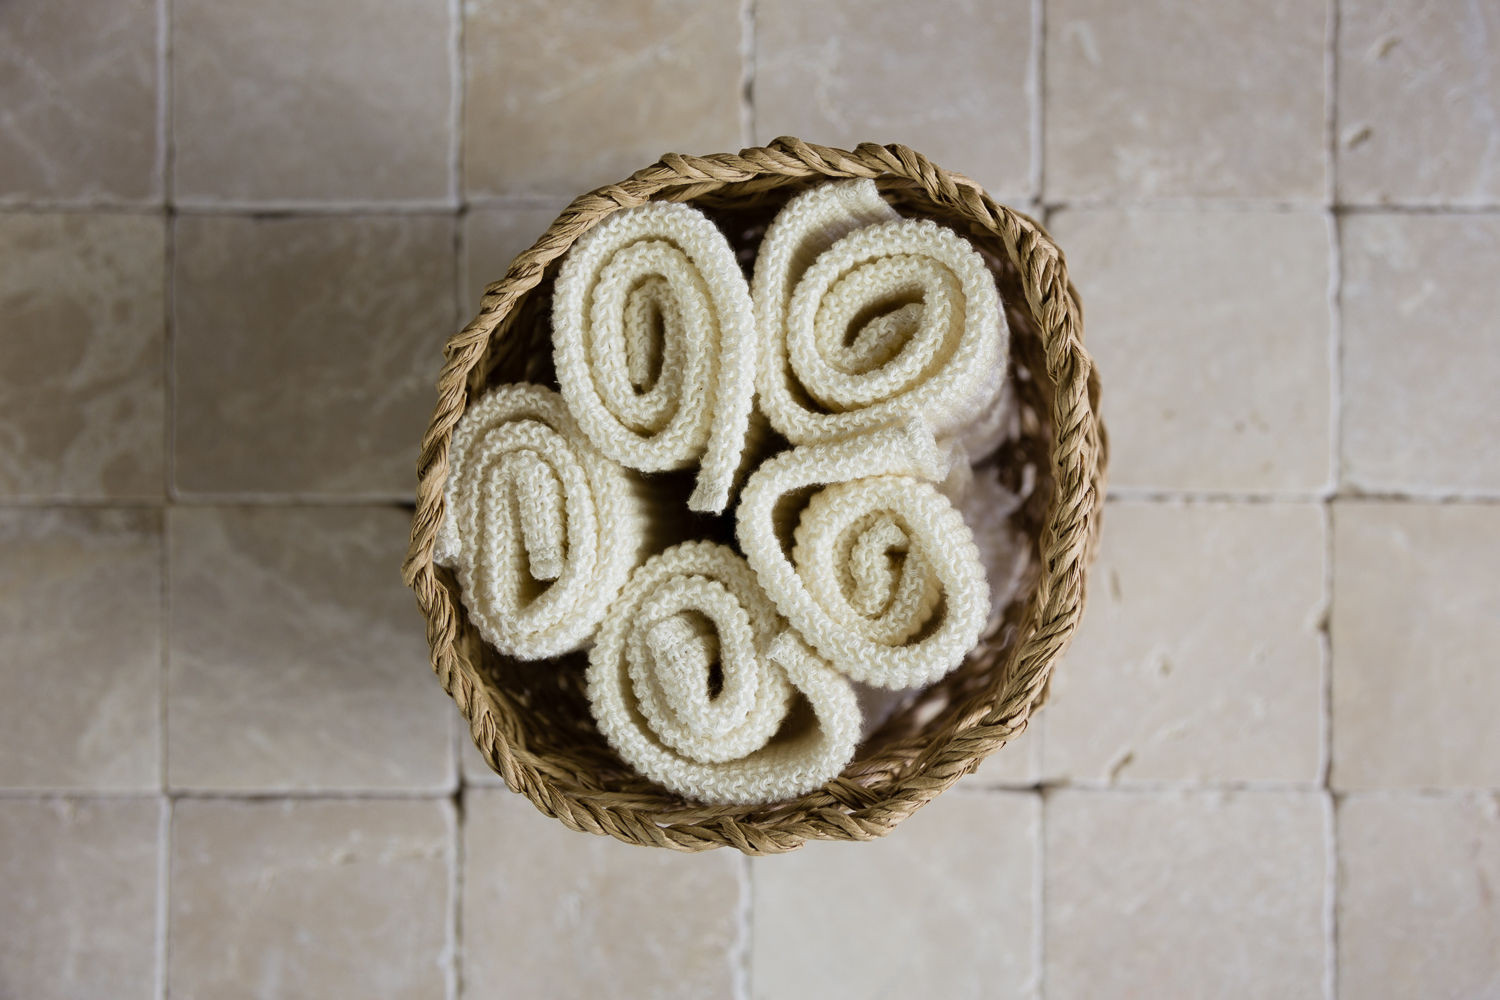 Linen Washcloths in Macrame Basket Oggetto Modern bathroom Textiles & accessories